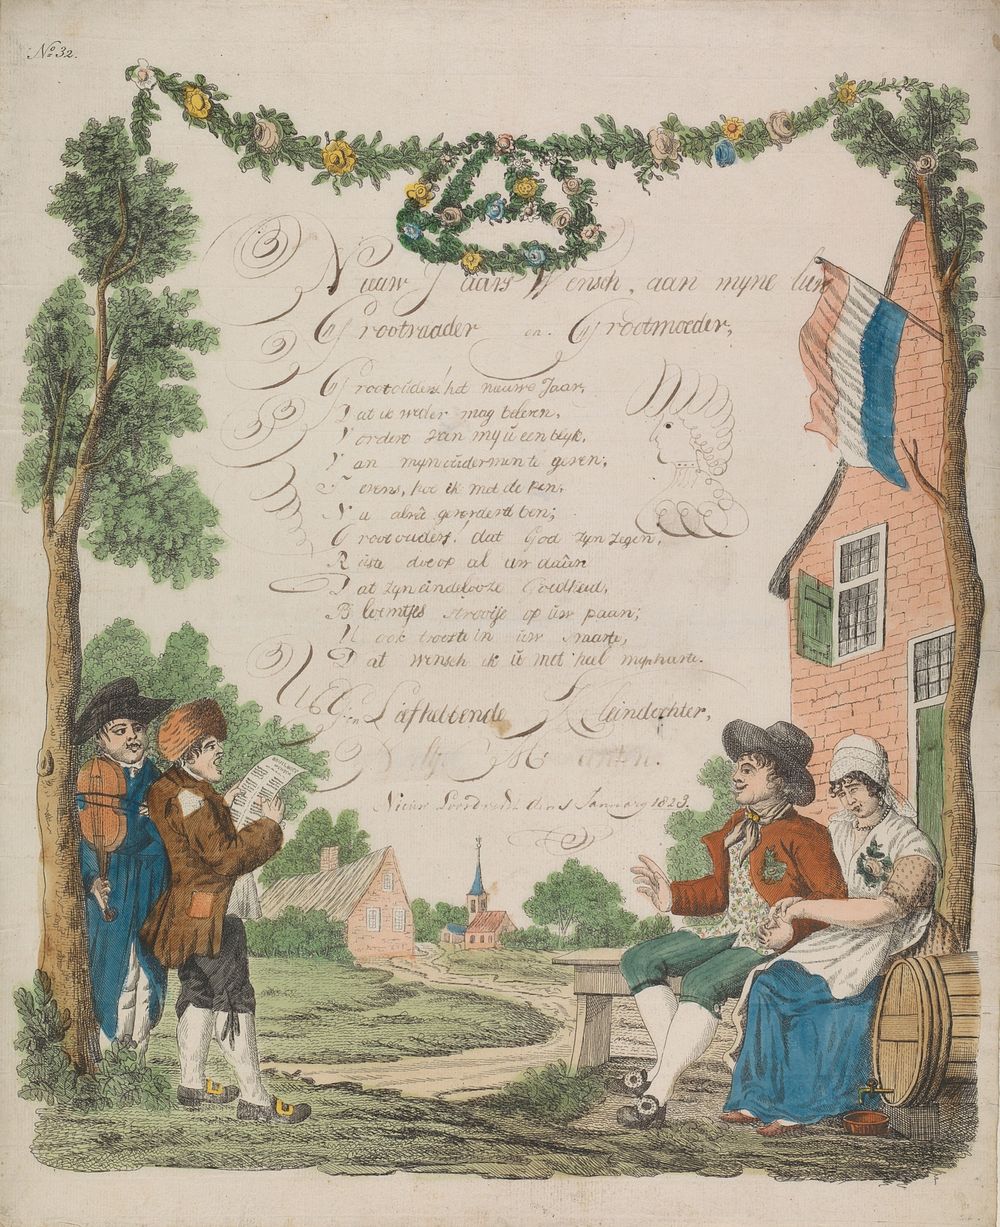 Wensbrief met muzikanten en een bruidspaar (1829) by anonymous and anonymous